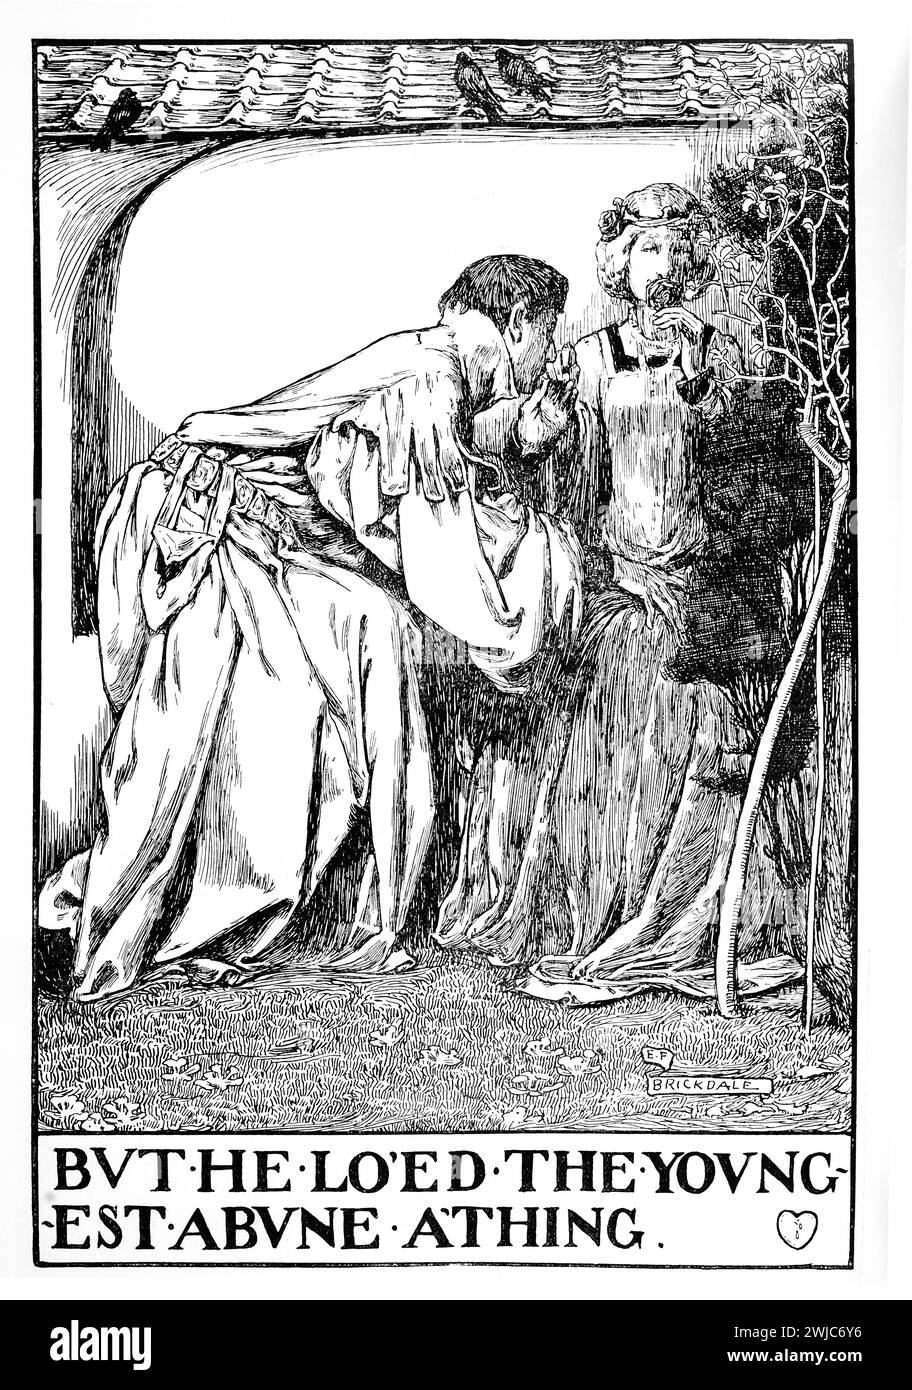 Illustrazione di 1901 righe della tradizionale ballata del delitto, The TWA Sisters, dell’artista Eleanor Fortescue Brickdale, “ma amava il più giovane sopra ogni cosa” Foto Stock